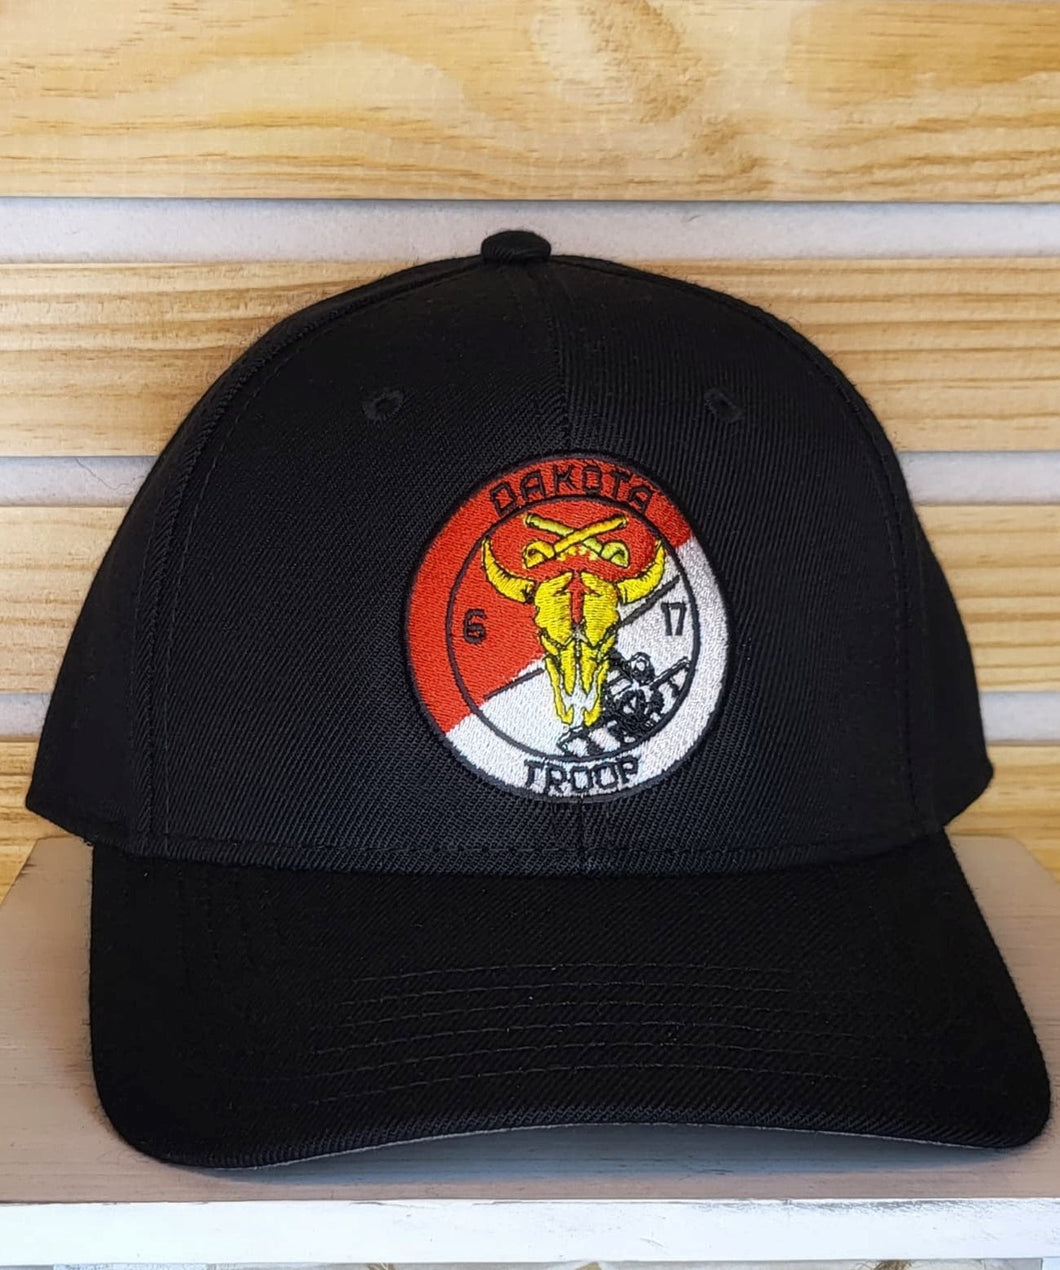 Dakota Troop Hats/Caps